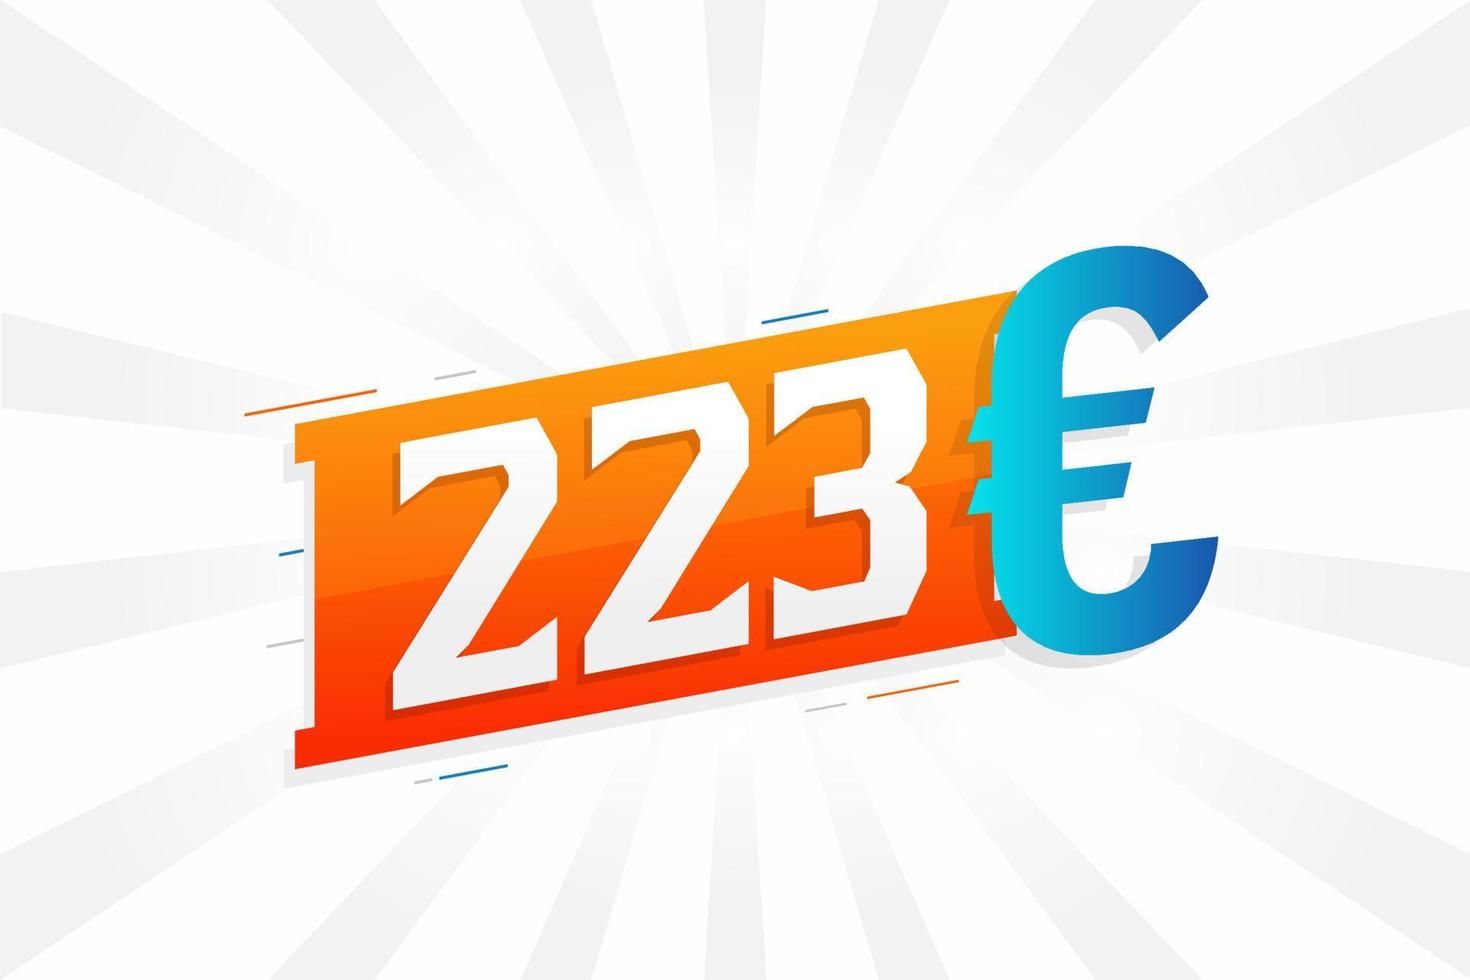 223 Euro Currency vector text symbol. 223 Euro European Union Money stock vector